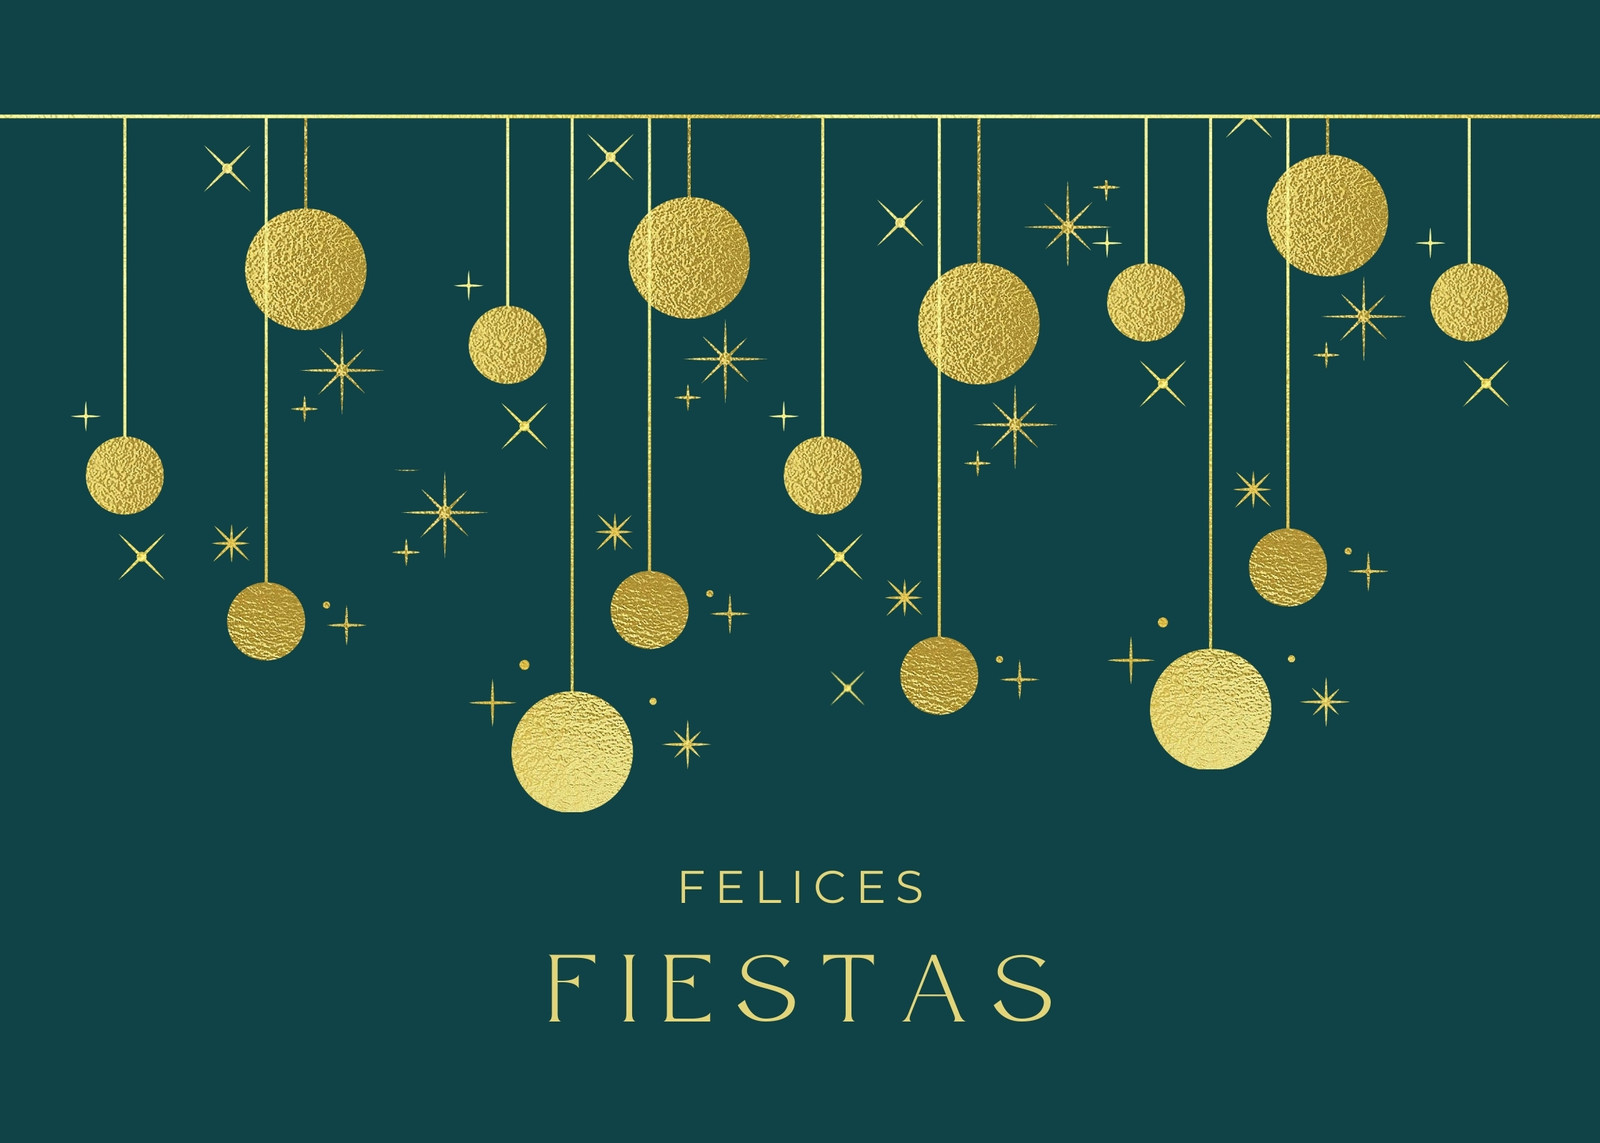 Postal de Navidad fiestas empresa ilustraciones decorativas brillante con clase y elegante verde y dorado